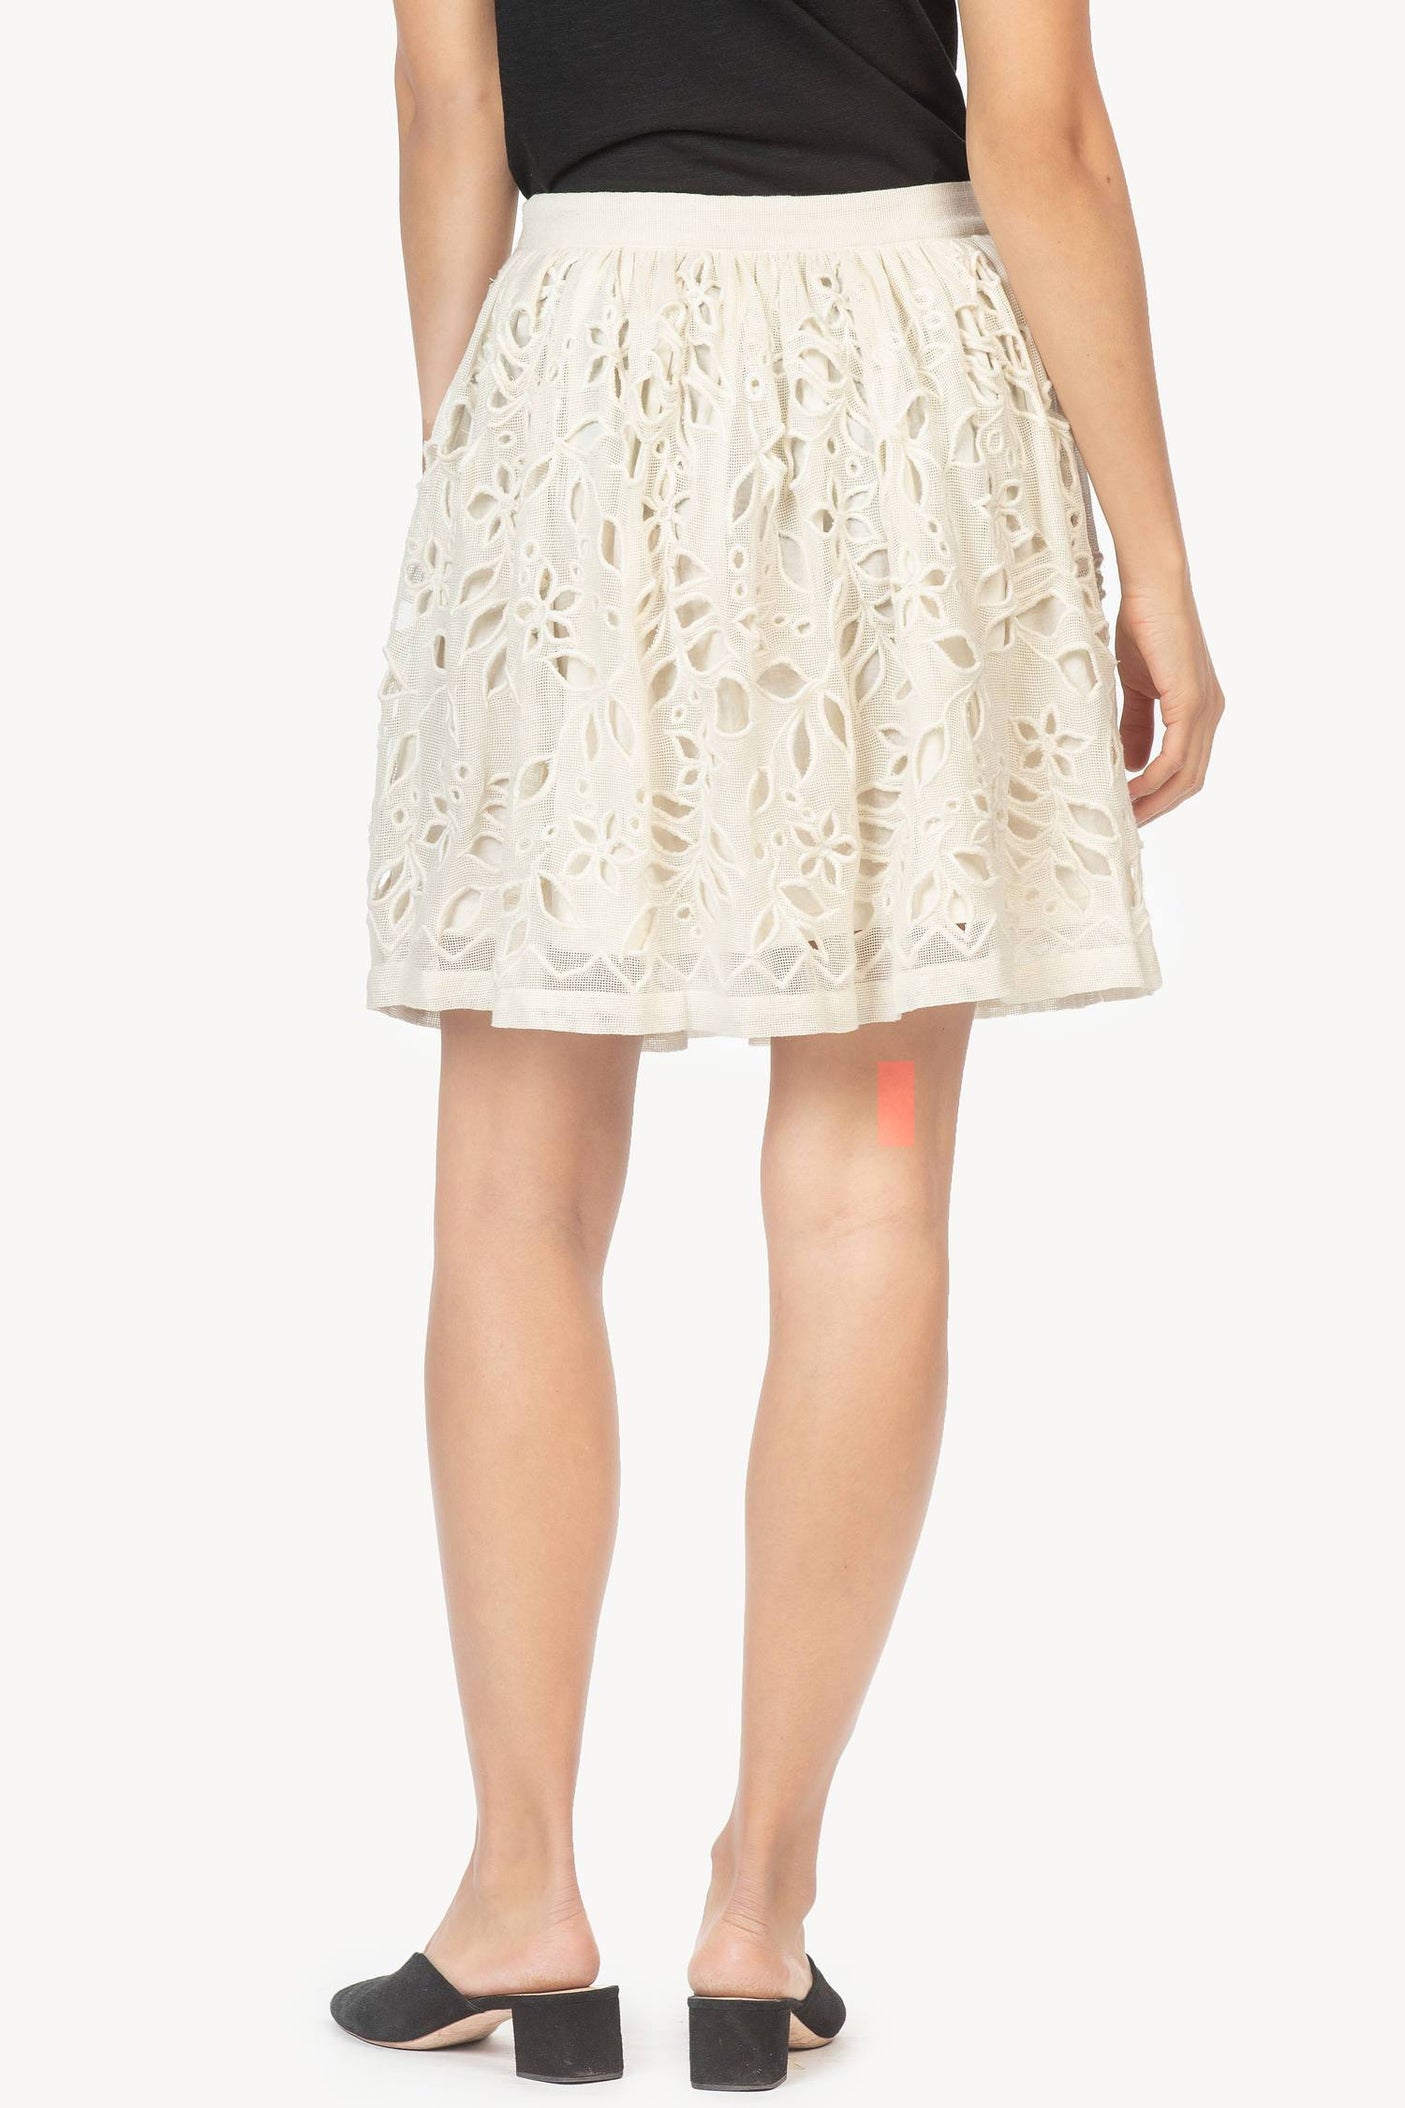 Skirt | 100% Cotton Clothing | Women's Spring Look Skirt